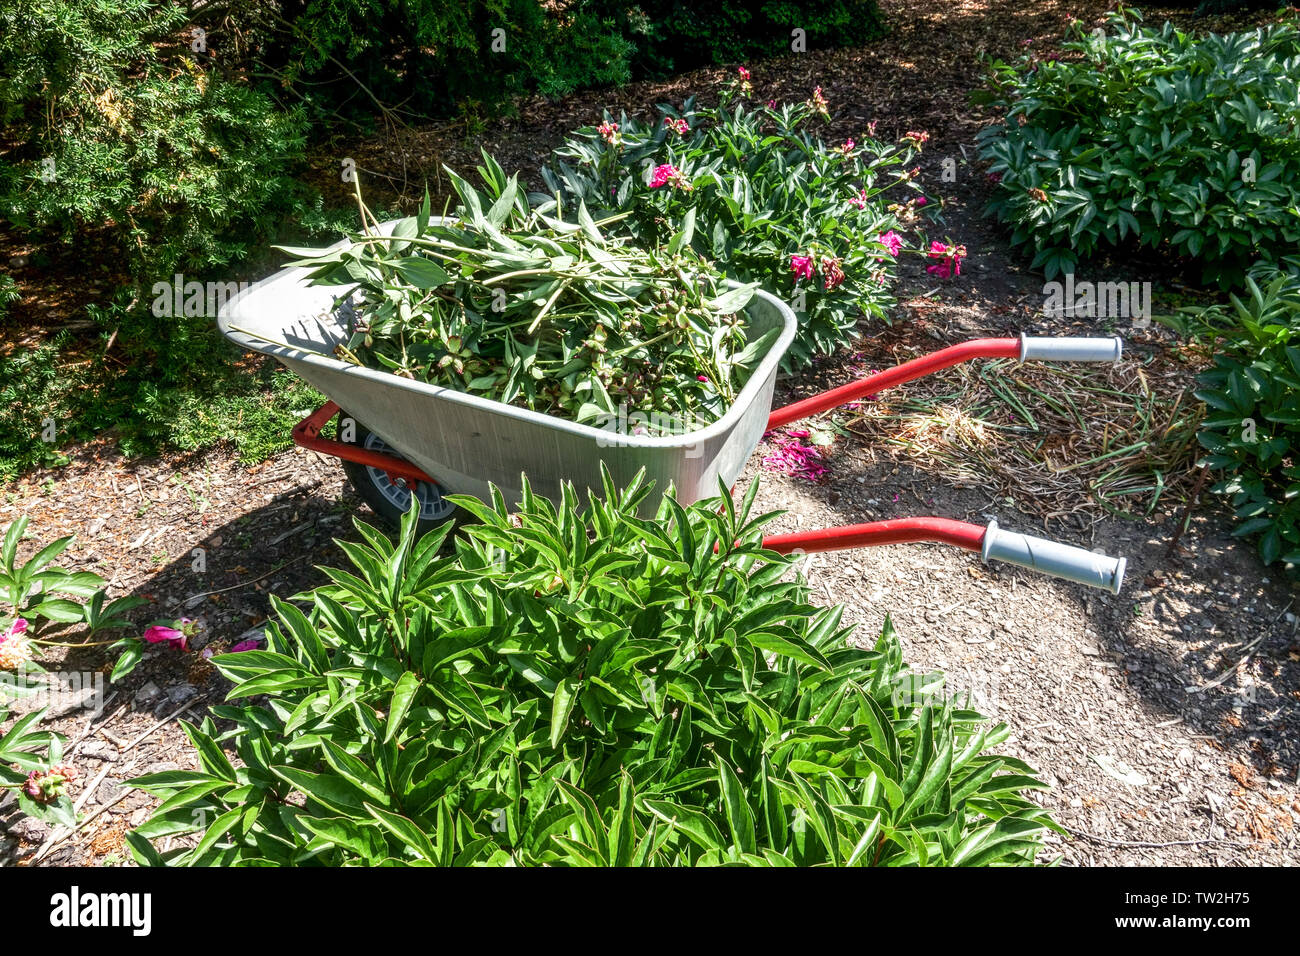 Verdorrten Stielen und Blumen fanden sich in einem Garten Schubkarre, Gartenpflege Stockfoto